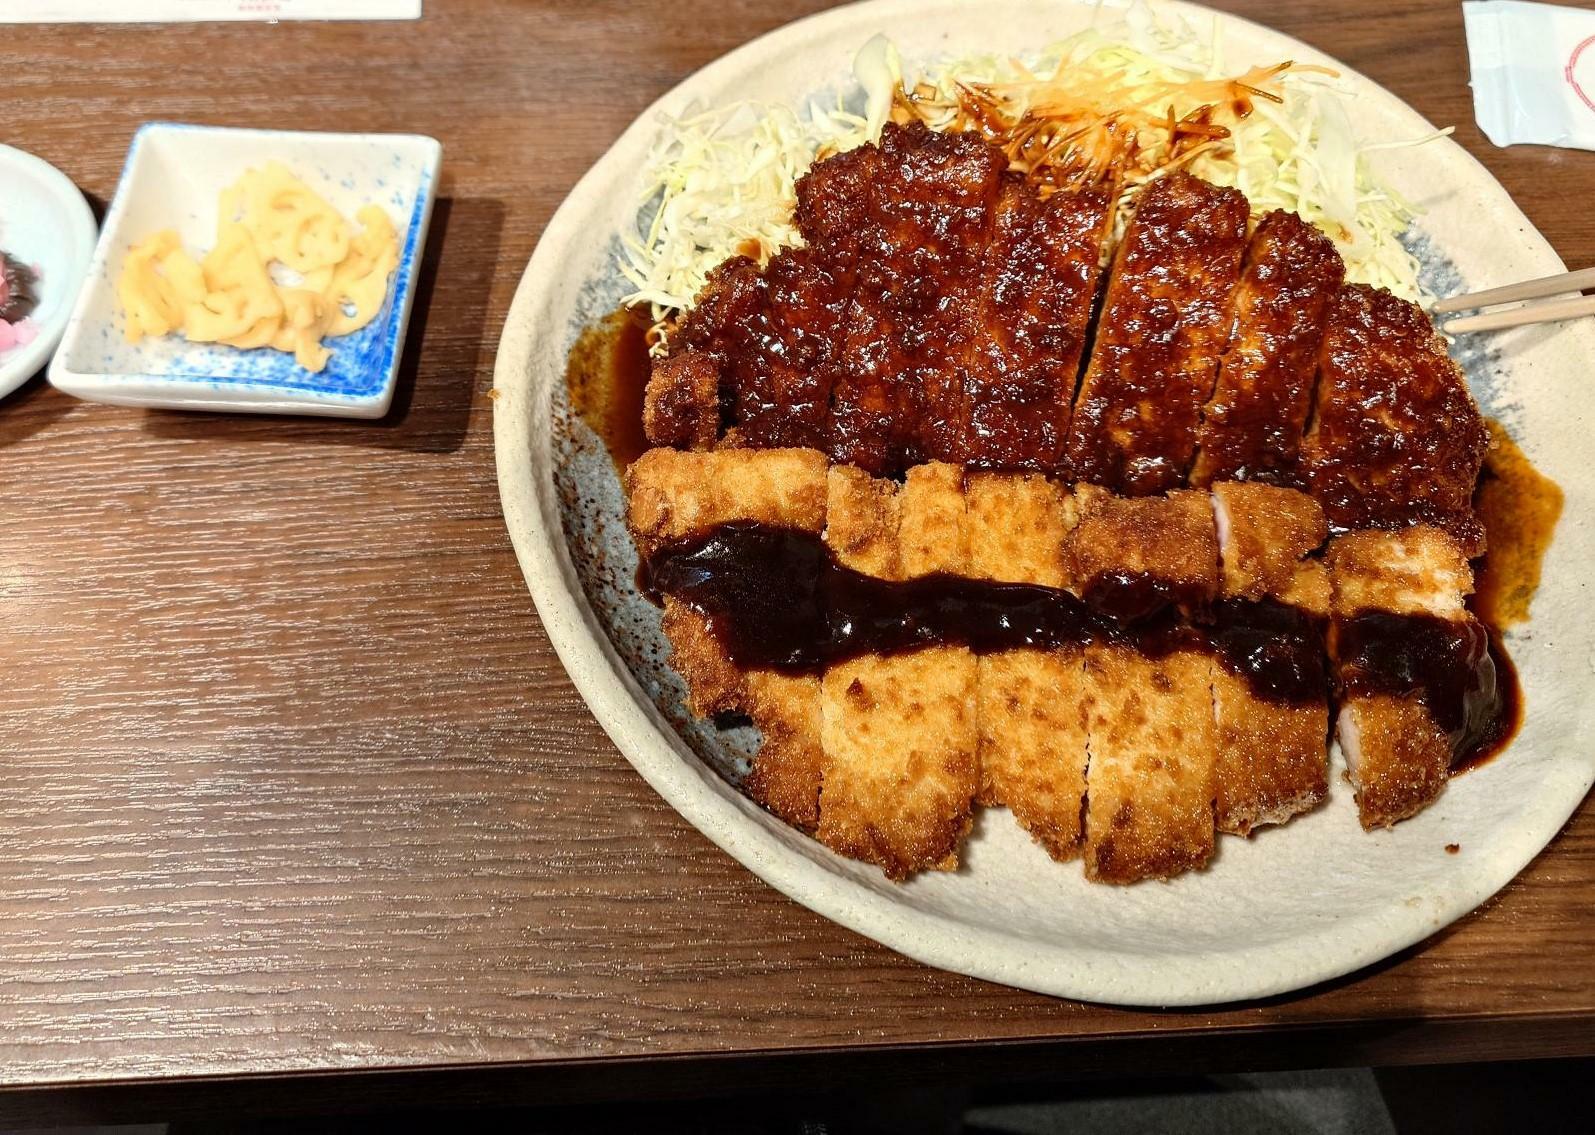 今回の取材では名古屋で味噌かつを食べた。筆者は北海道(夕張)から九州(熊本・宮崎)まで全国各地で色々とあった不動産の取材をしオーサー記事としているが、「ついでに地元の名物を食べる」のが流儀と化している